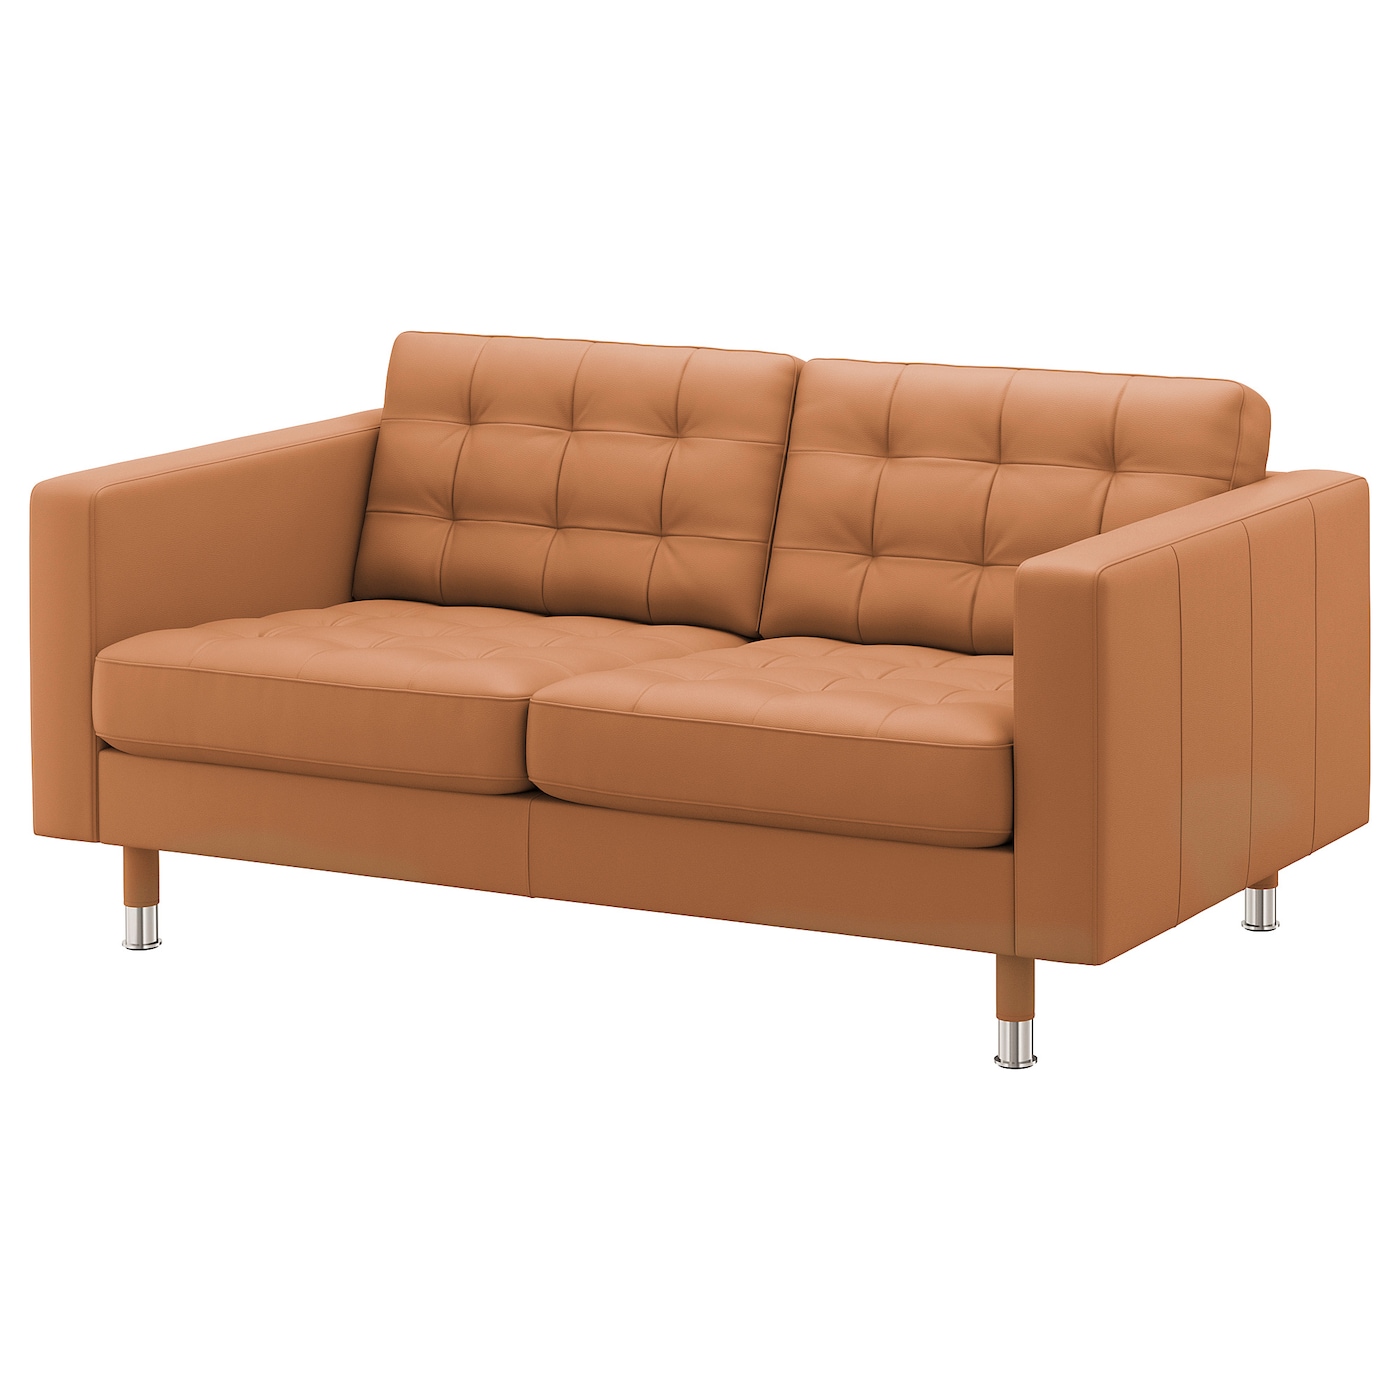 2-местный диван - IKEA LANDSKRONA, 164х89х78 см, оранжевый, кожа, ЛАНДСКРУНА ИКЕА